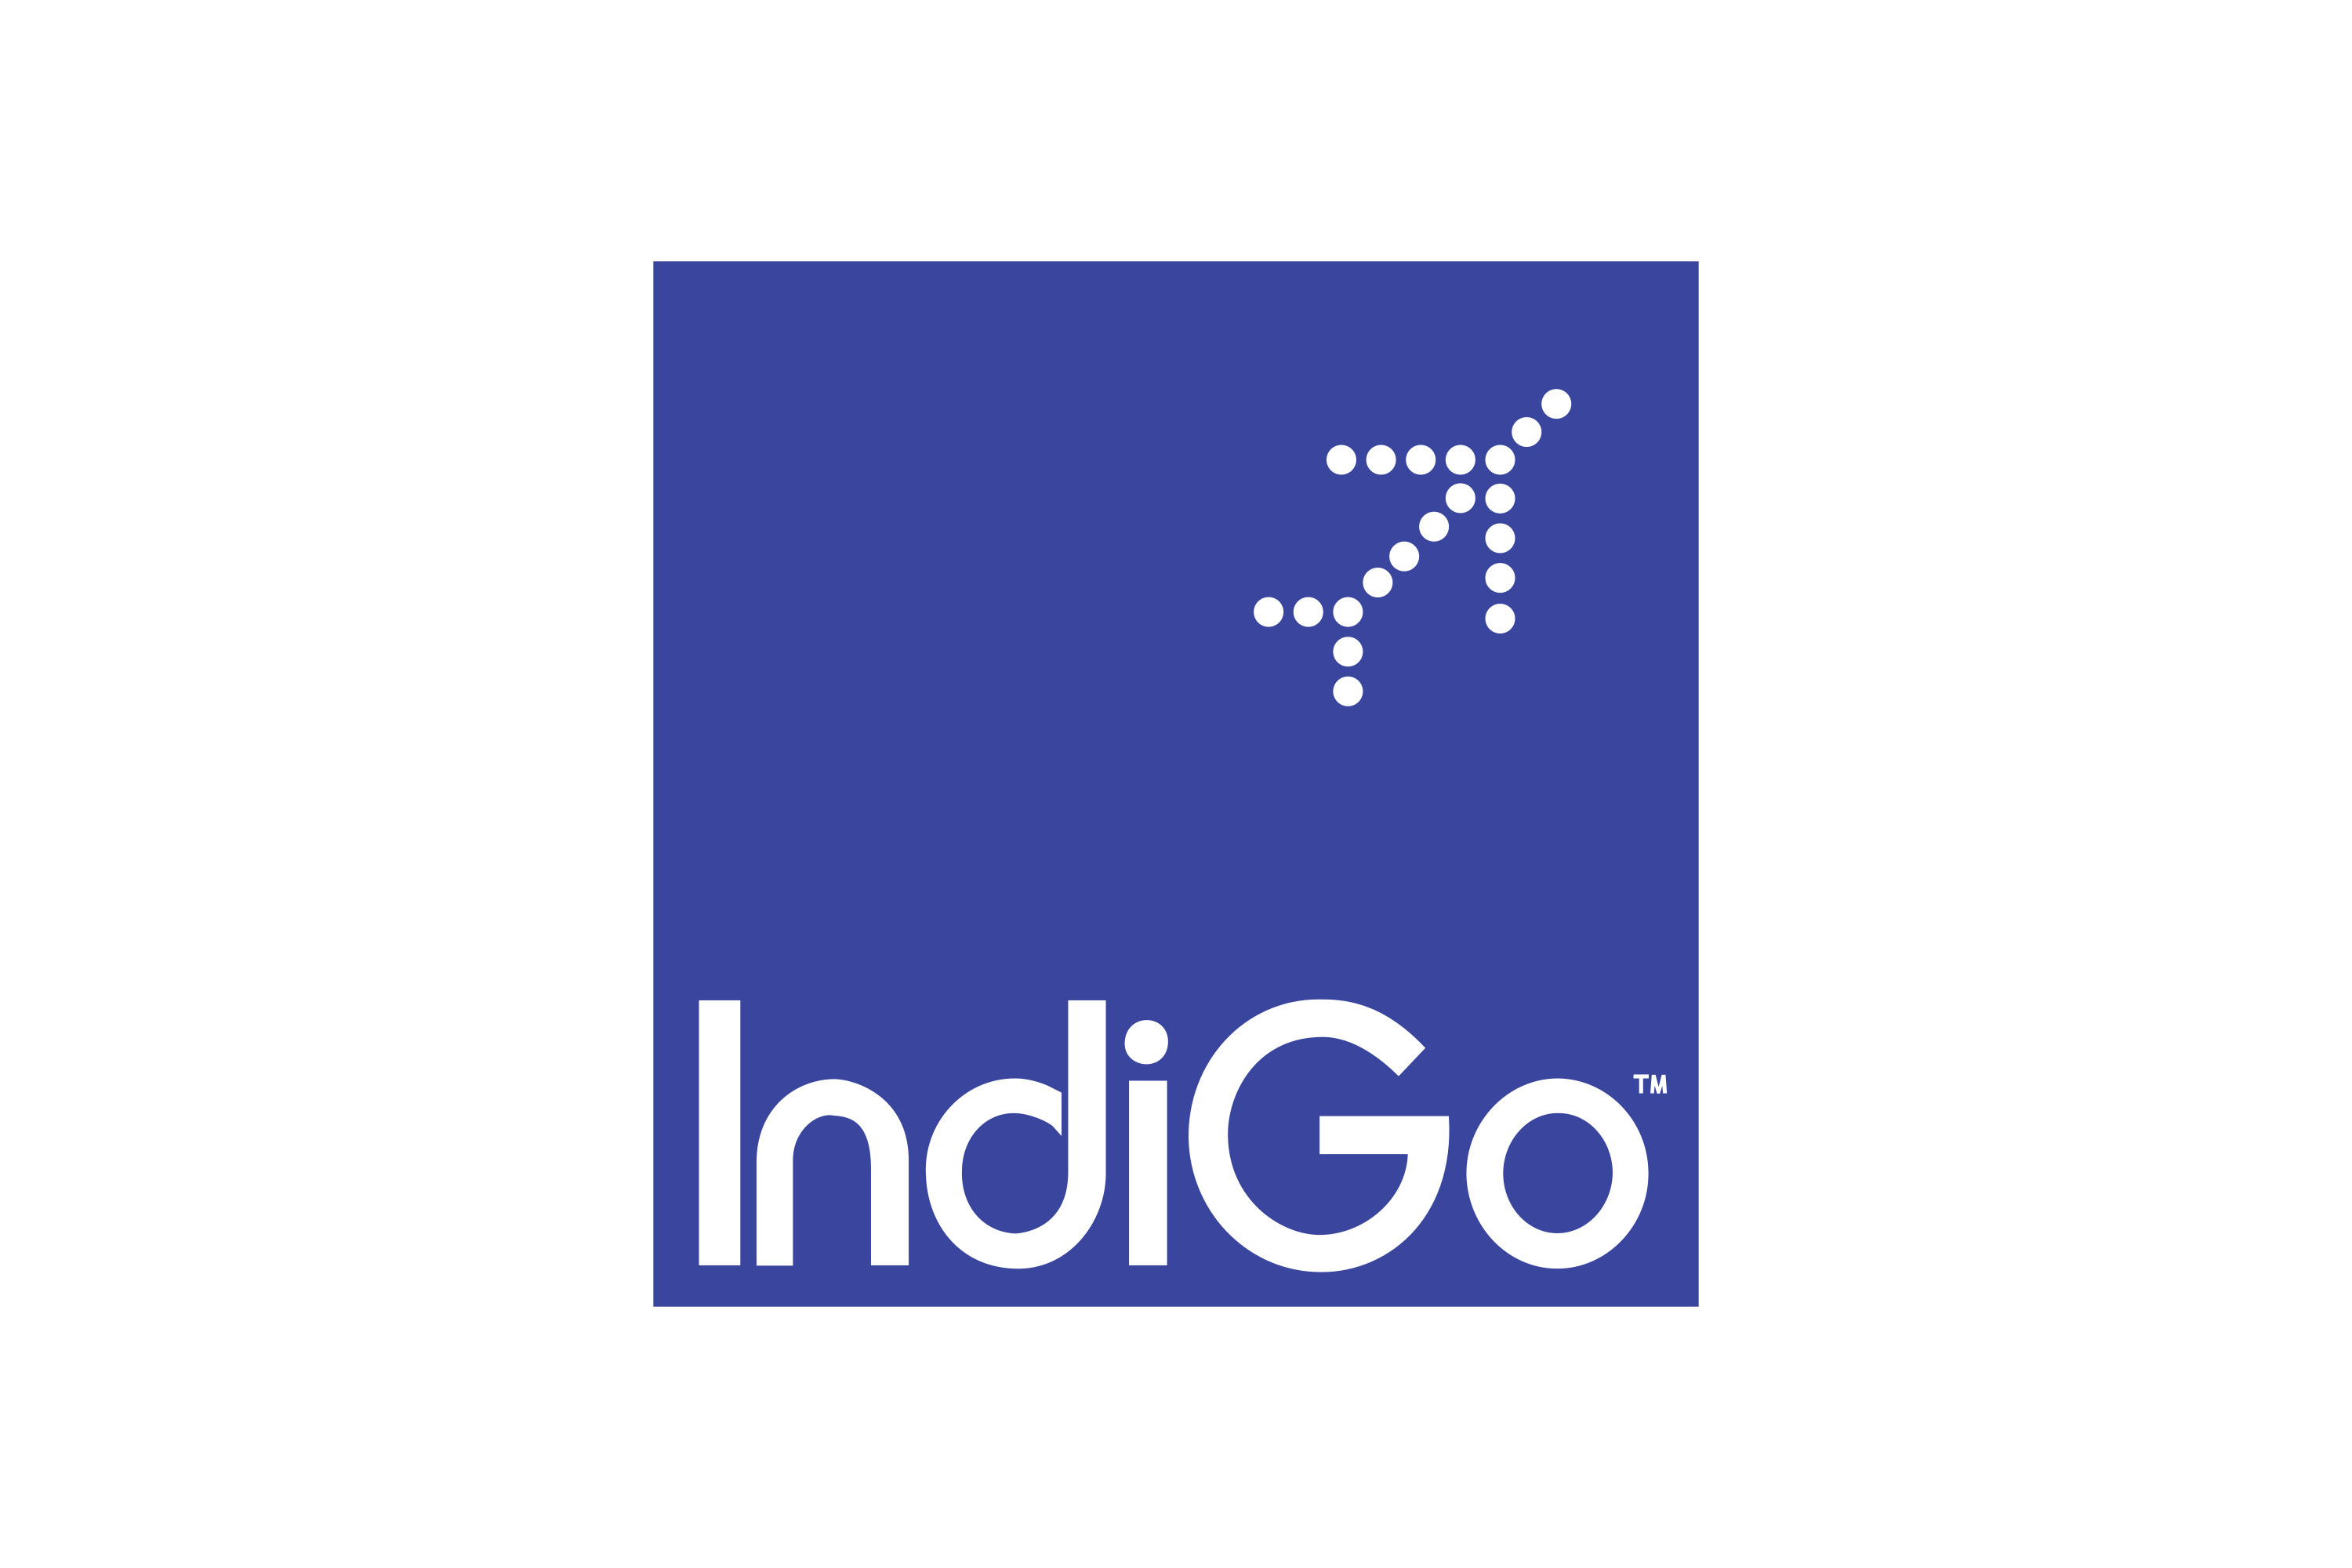 Download IndiGo Logo in SVG Vector or PNG File Format - Logo.wine